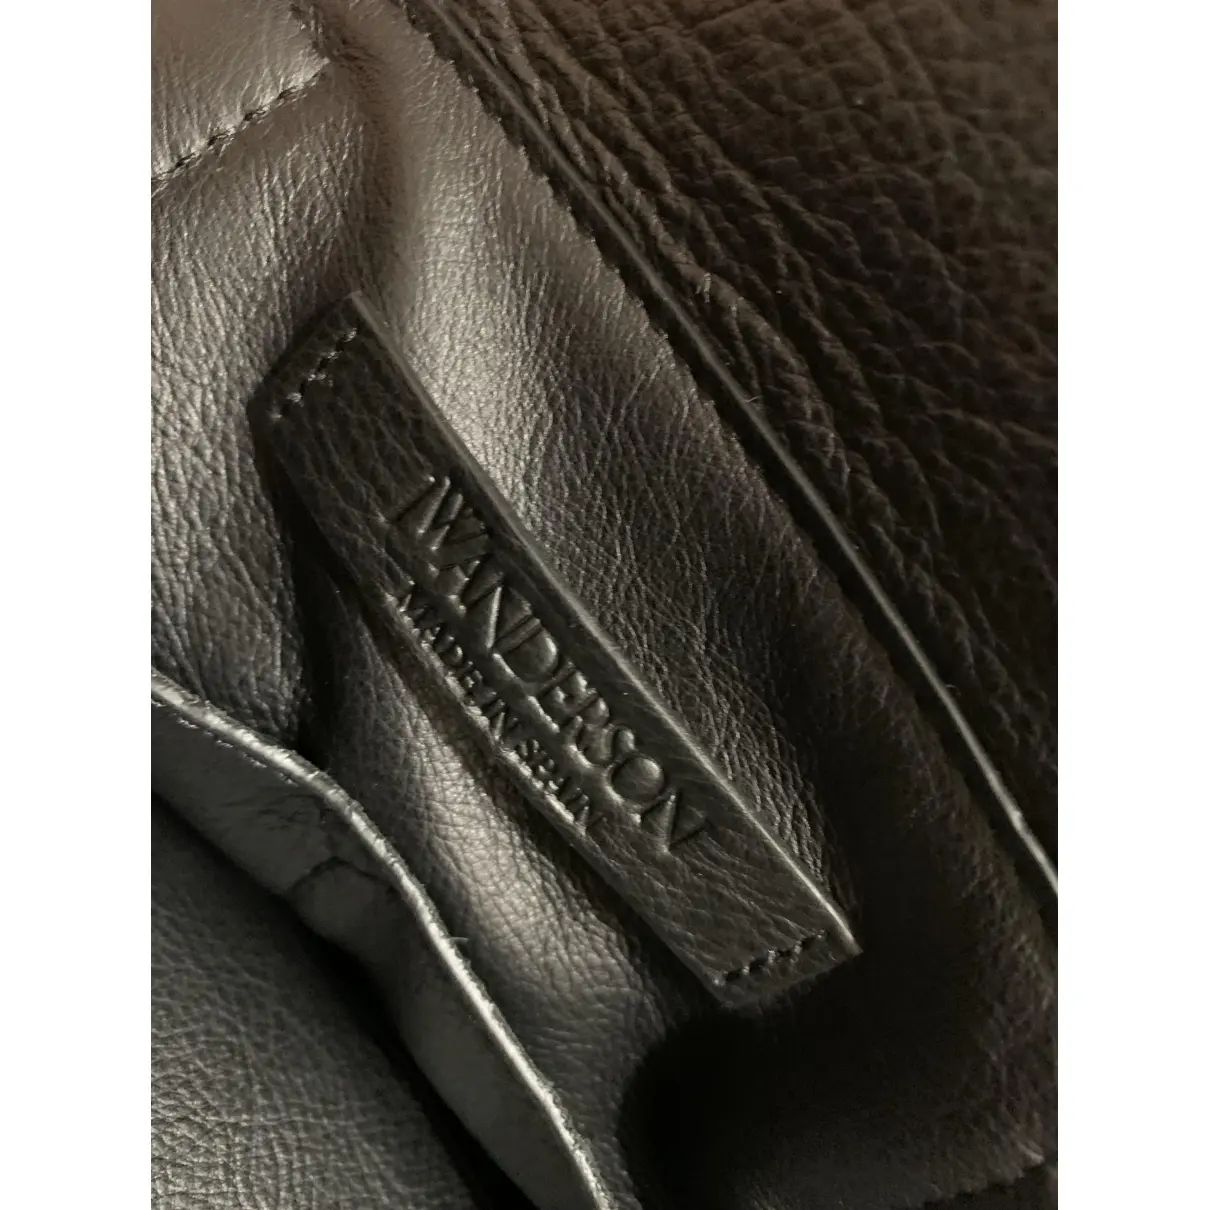 Luxury JW Anderson Handbags Women